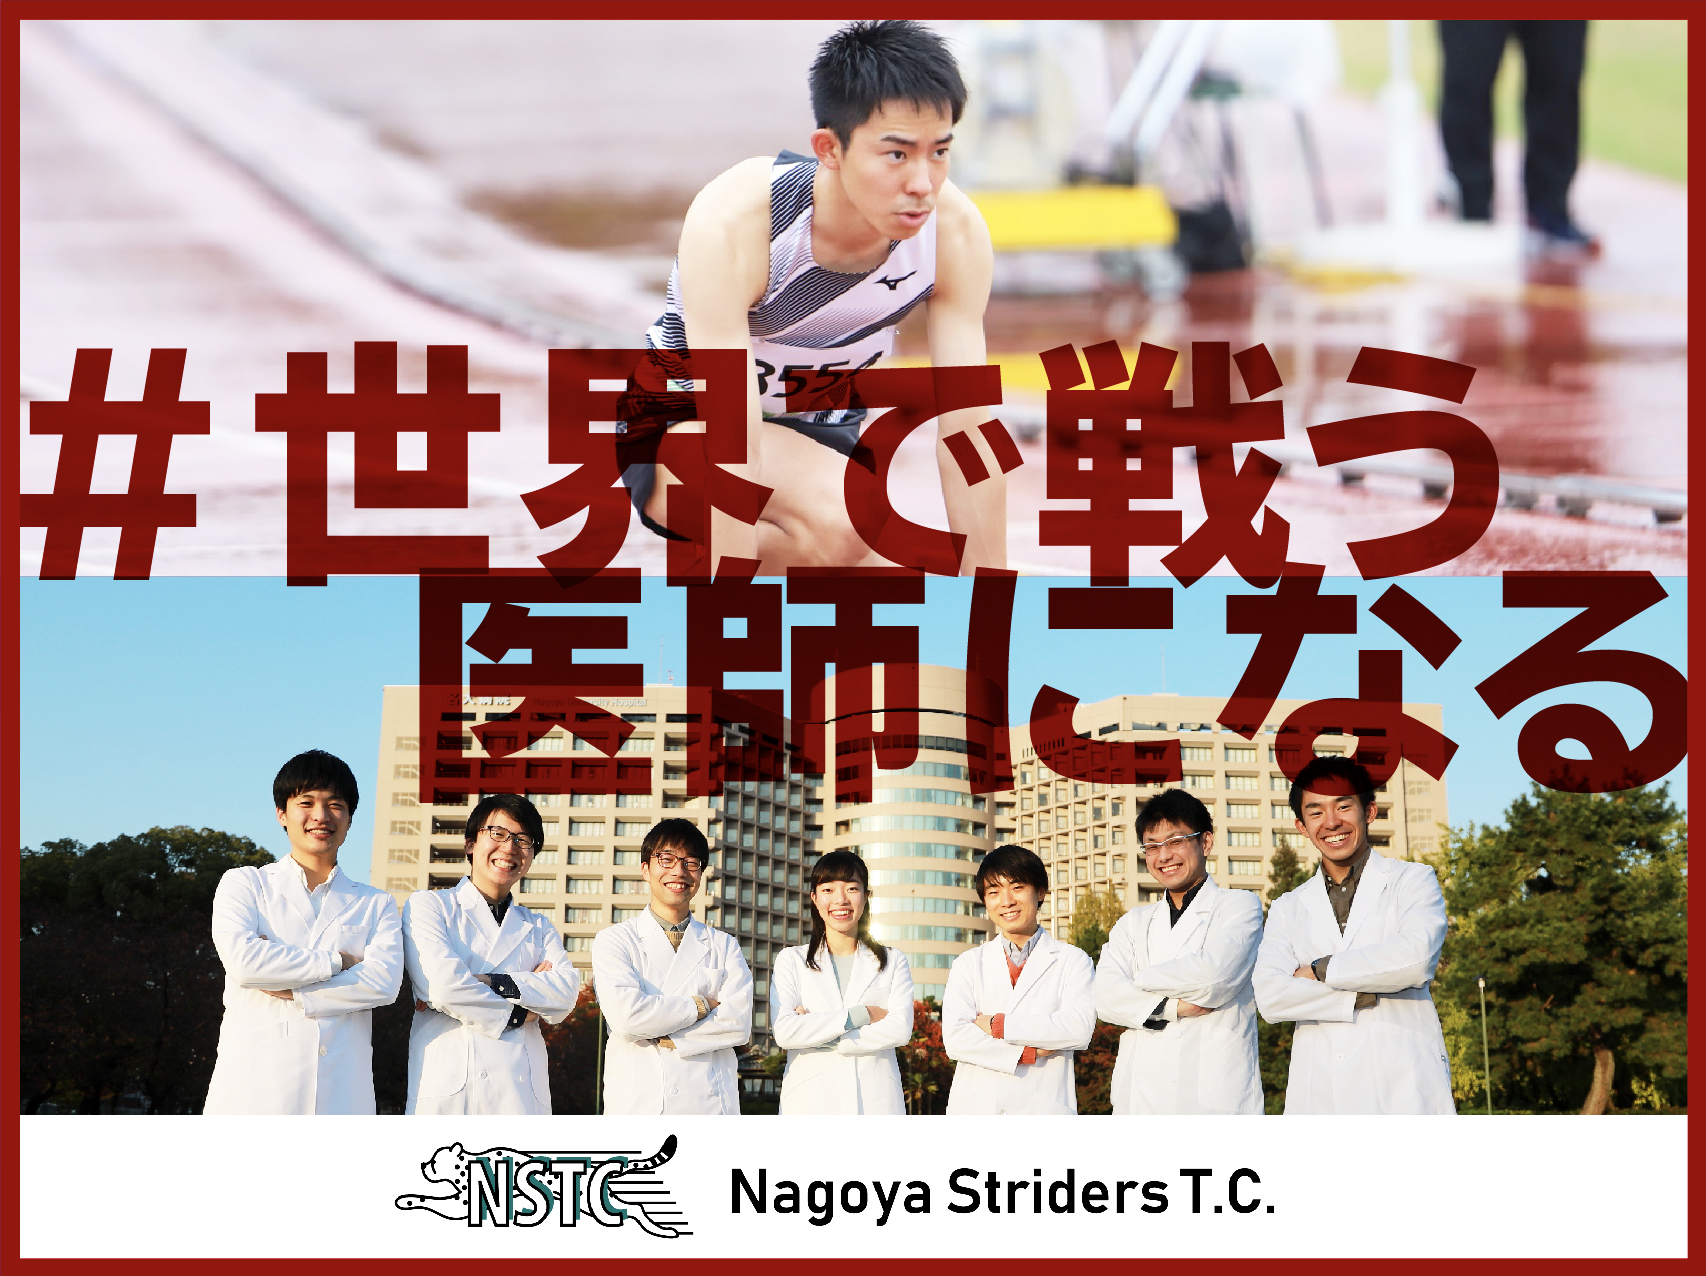 400ｍハードル 真野悠太郎選手が所属する名古屋ストライダーズtcがクラウドファンディングを スポチュニティ で実施 スポチュニティ株式会社のプレスリリース